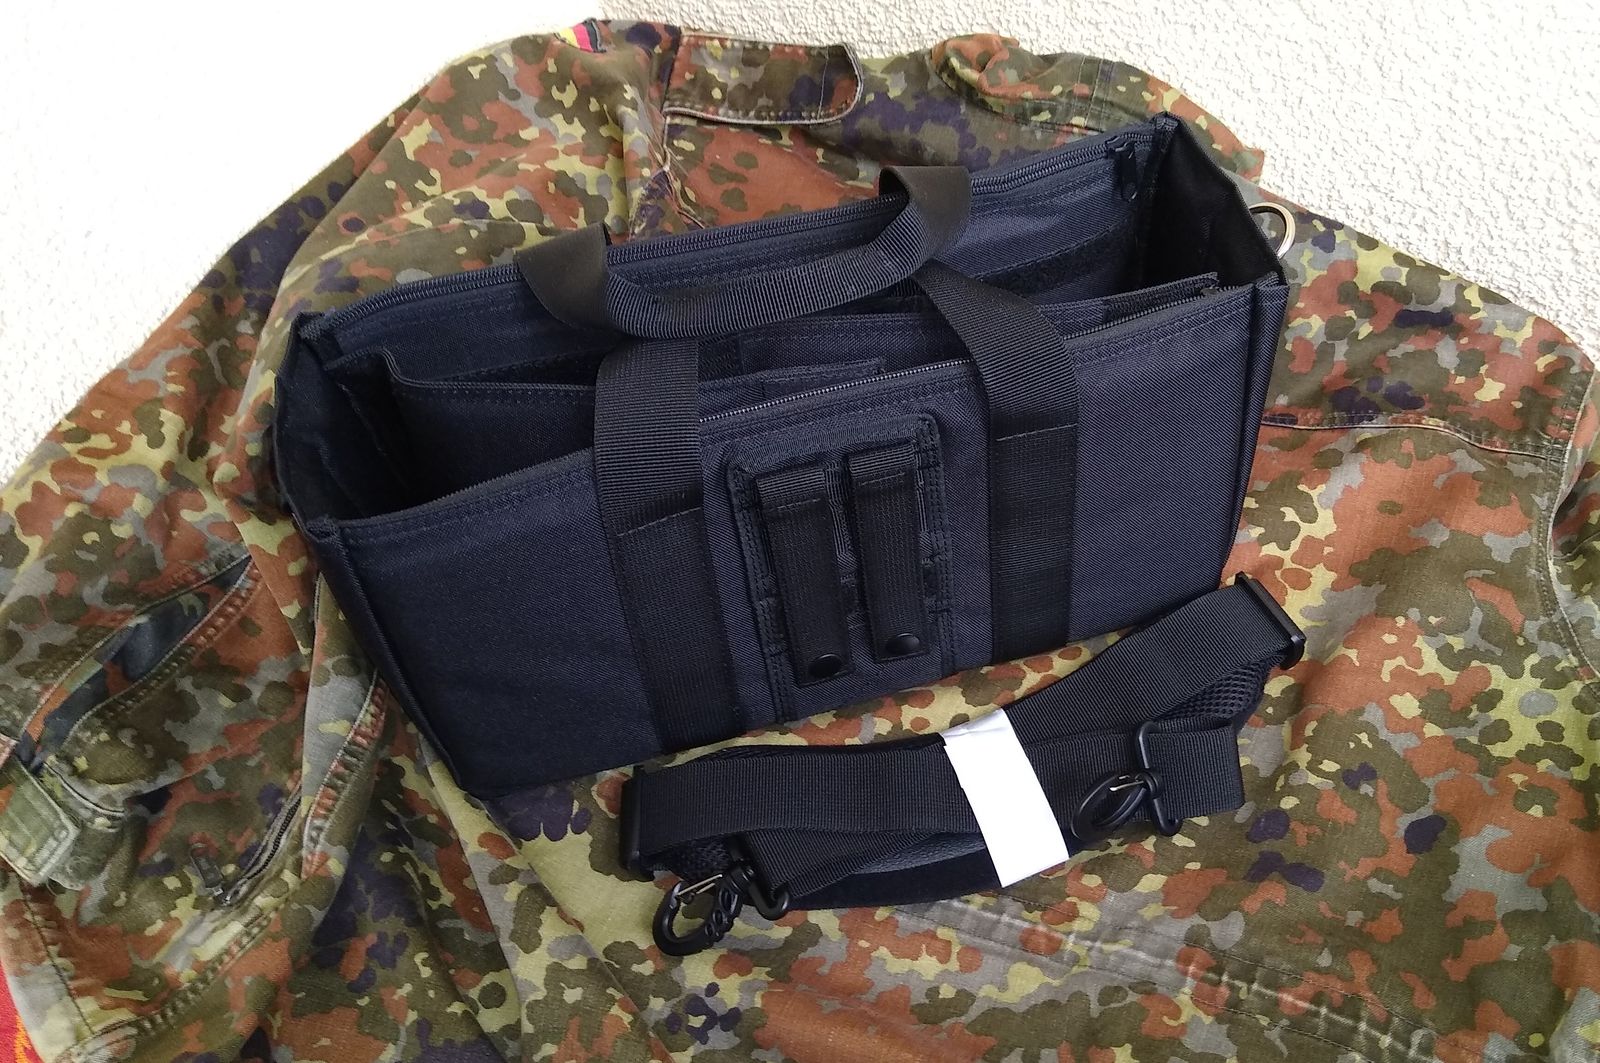 Cop Range Bag - Geartester